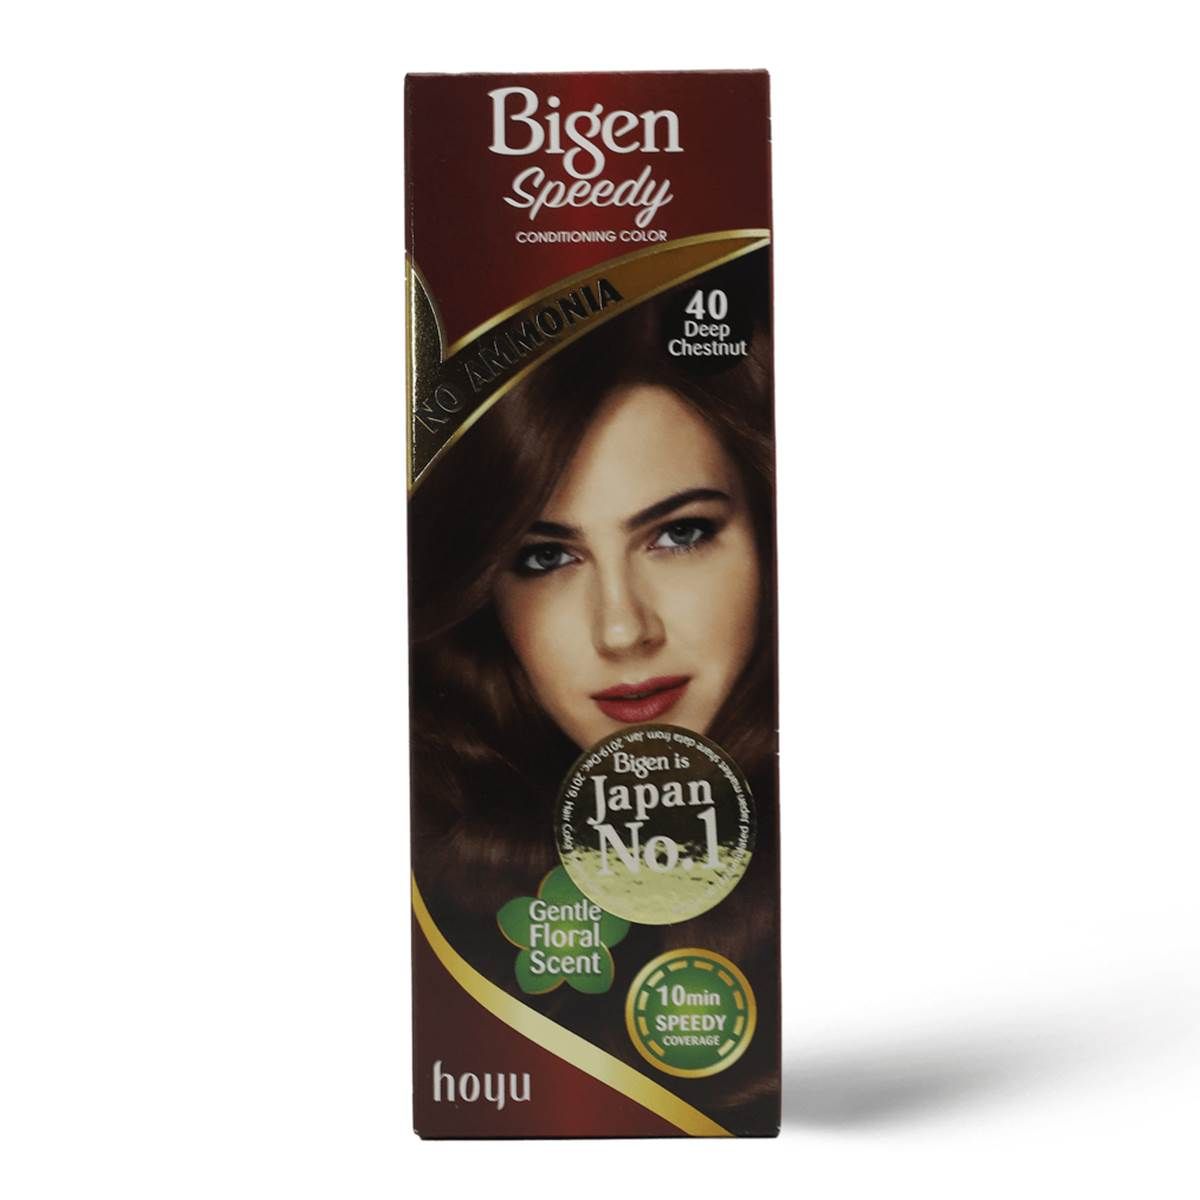 Bigen women's hair dye without ammonia dark chestnut